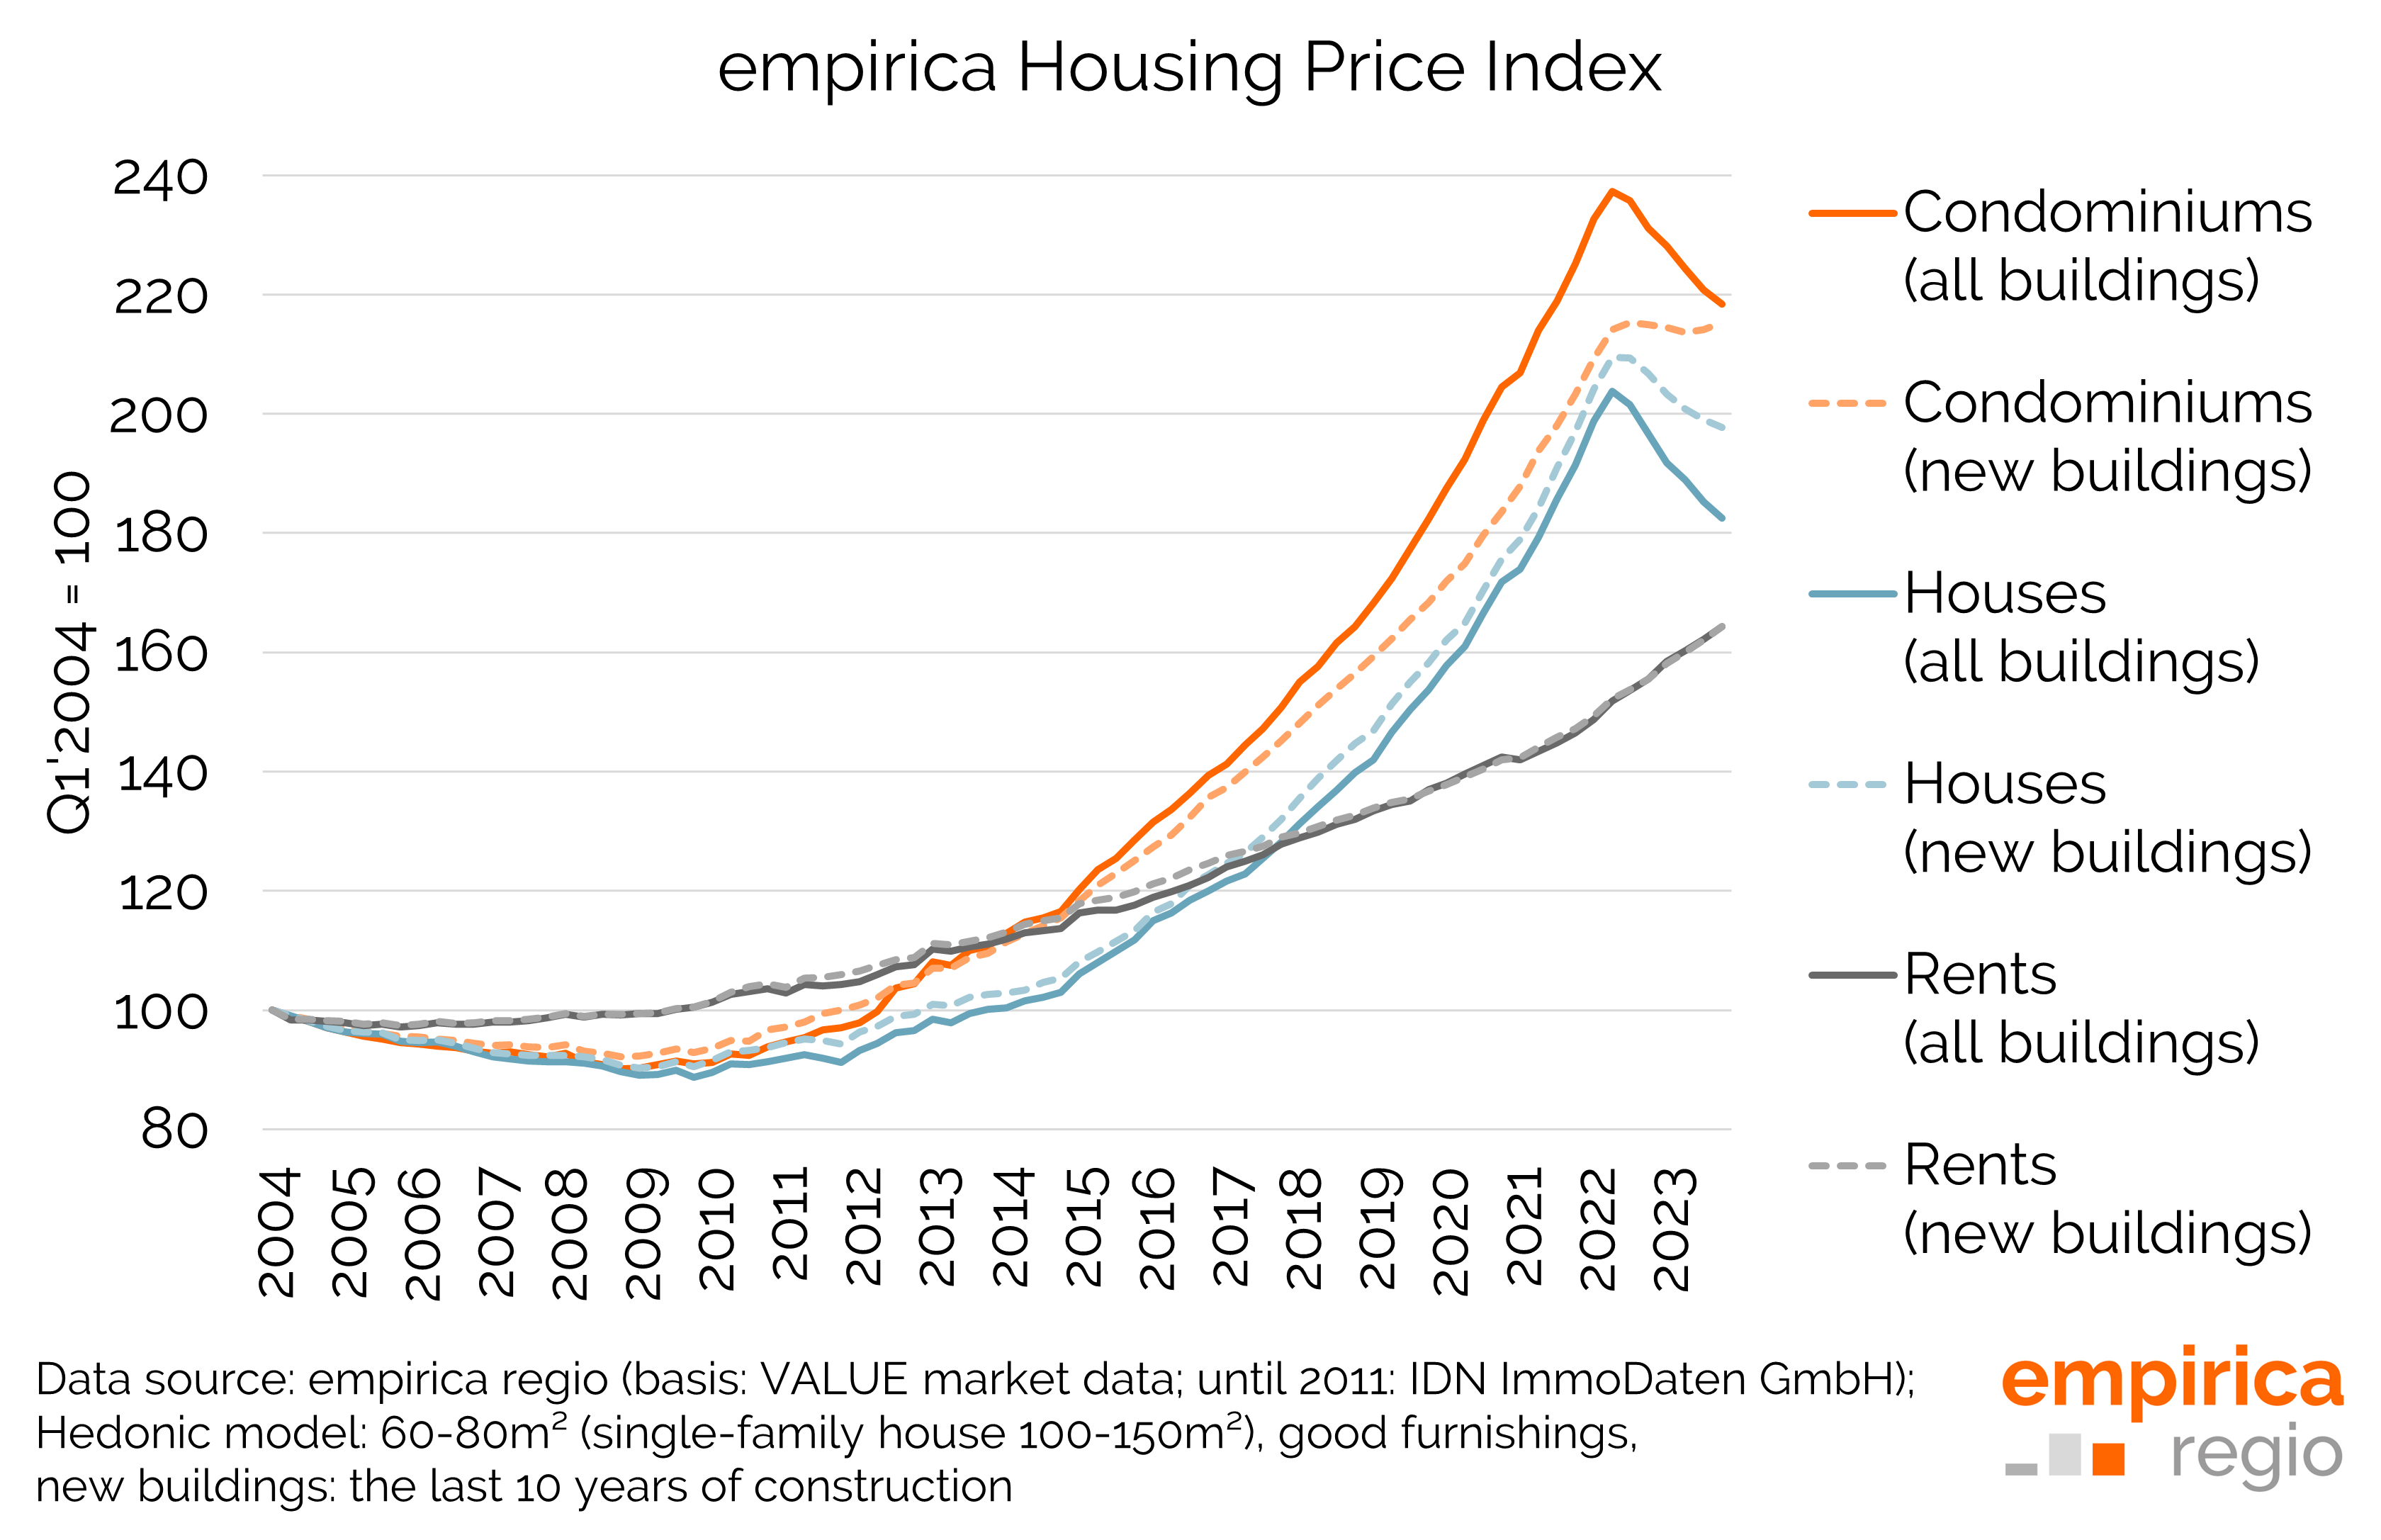 empirica Immobilienpreisindex Q1 2004 bis Q4 2023 im Vergleich: Miete, ETW, EZFH zum Kauf (jeweils Neubau und alle Baujahre)